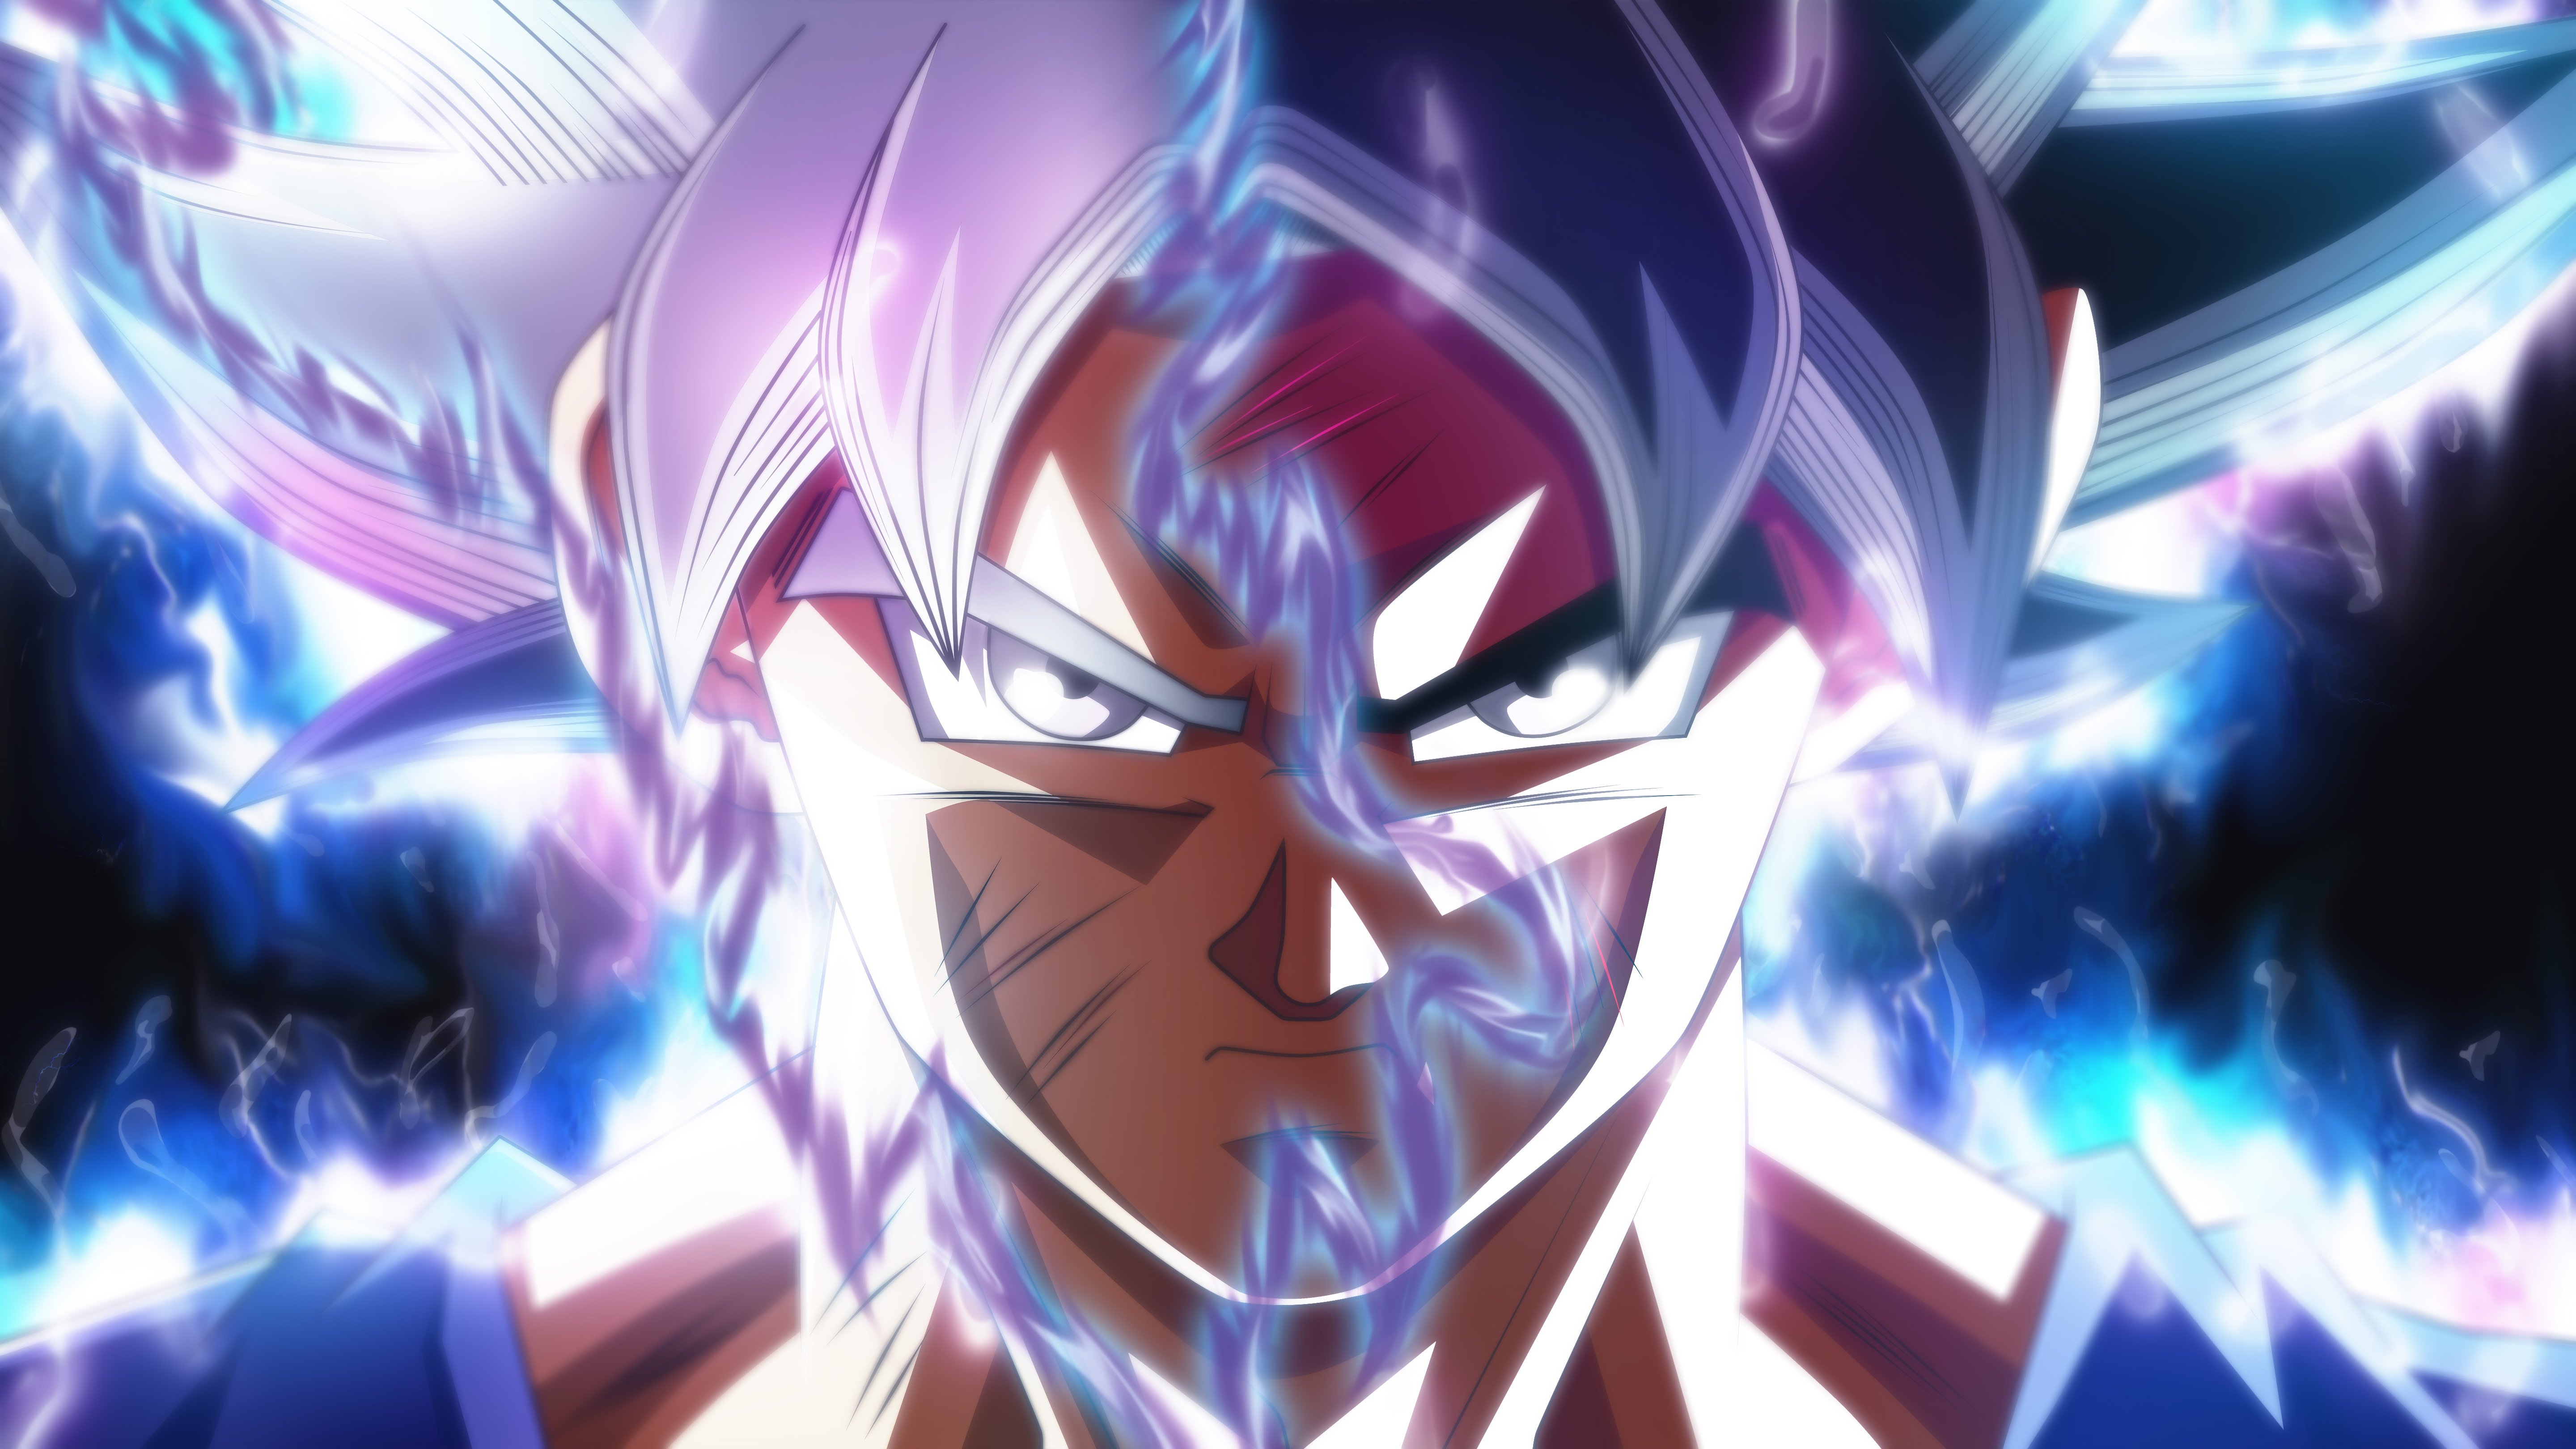 Fondos de pantalla Anime Goku Ultra Instinct Transformación Dragon Ball Super